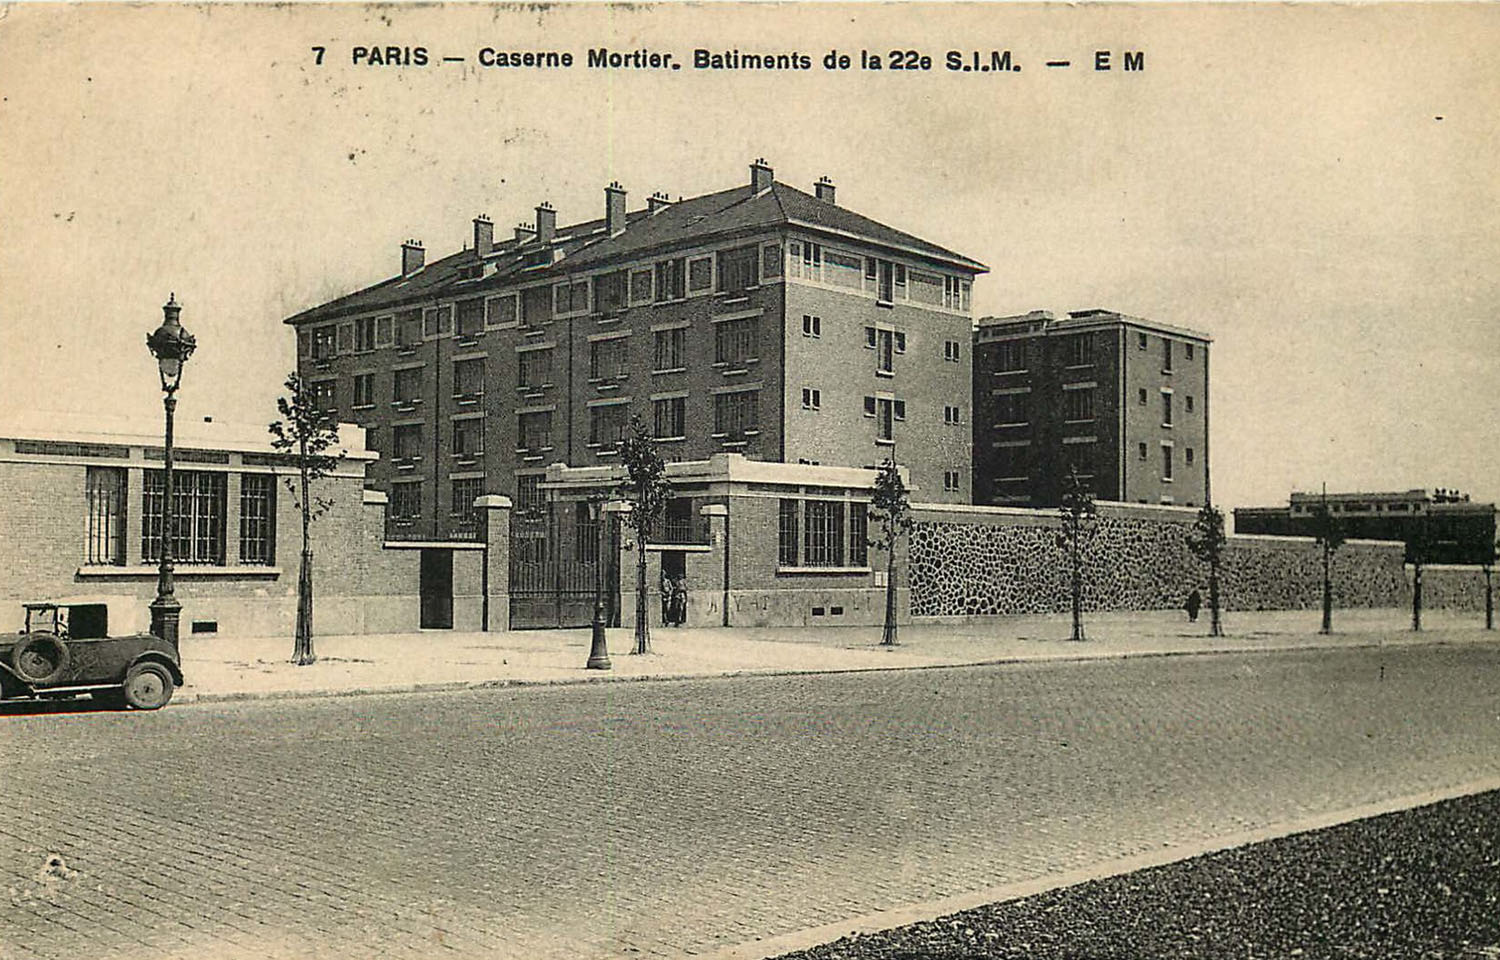 Paris - Caserne Mortier. Bâtiments de la 22e S.I.M.